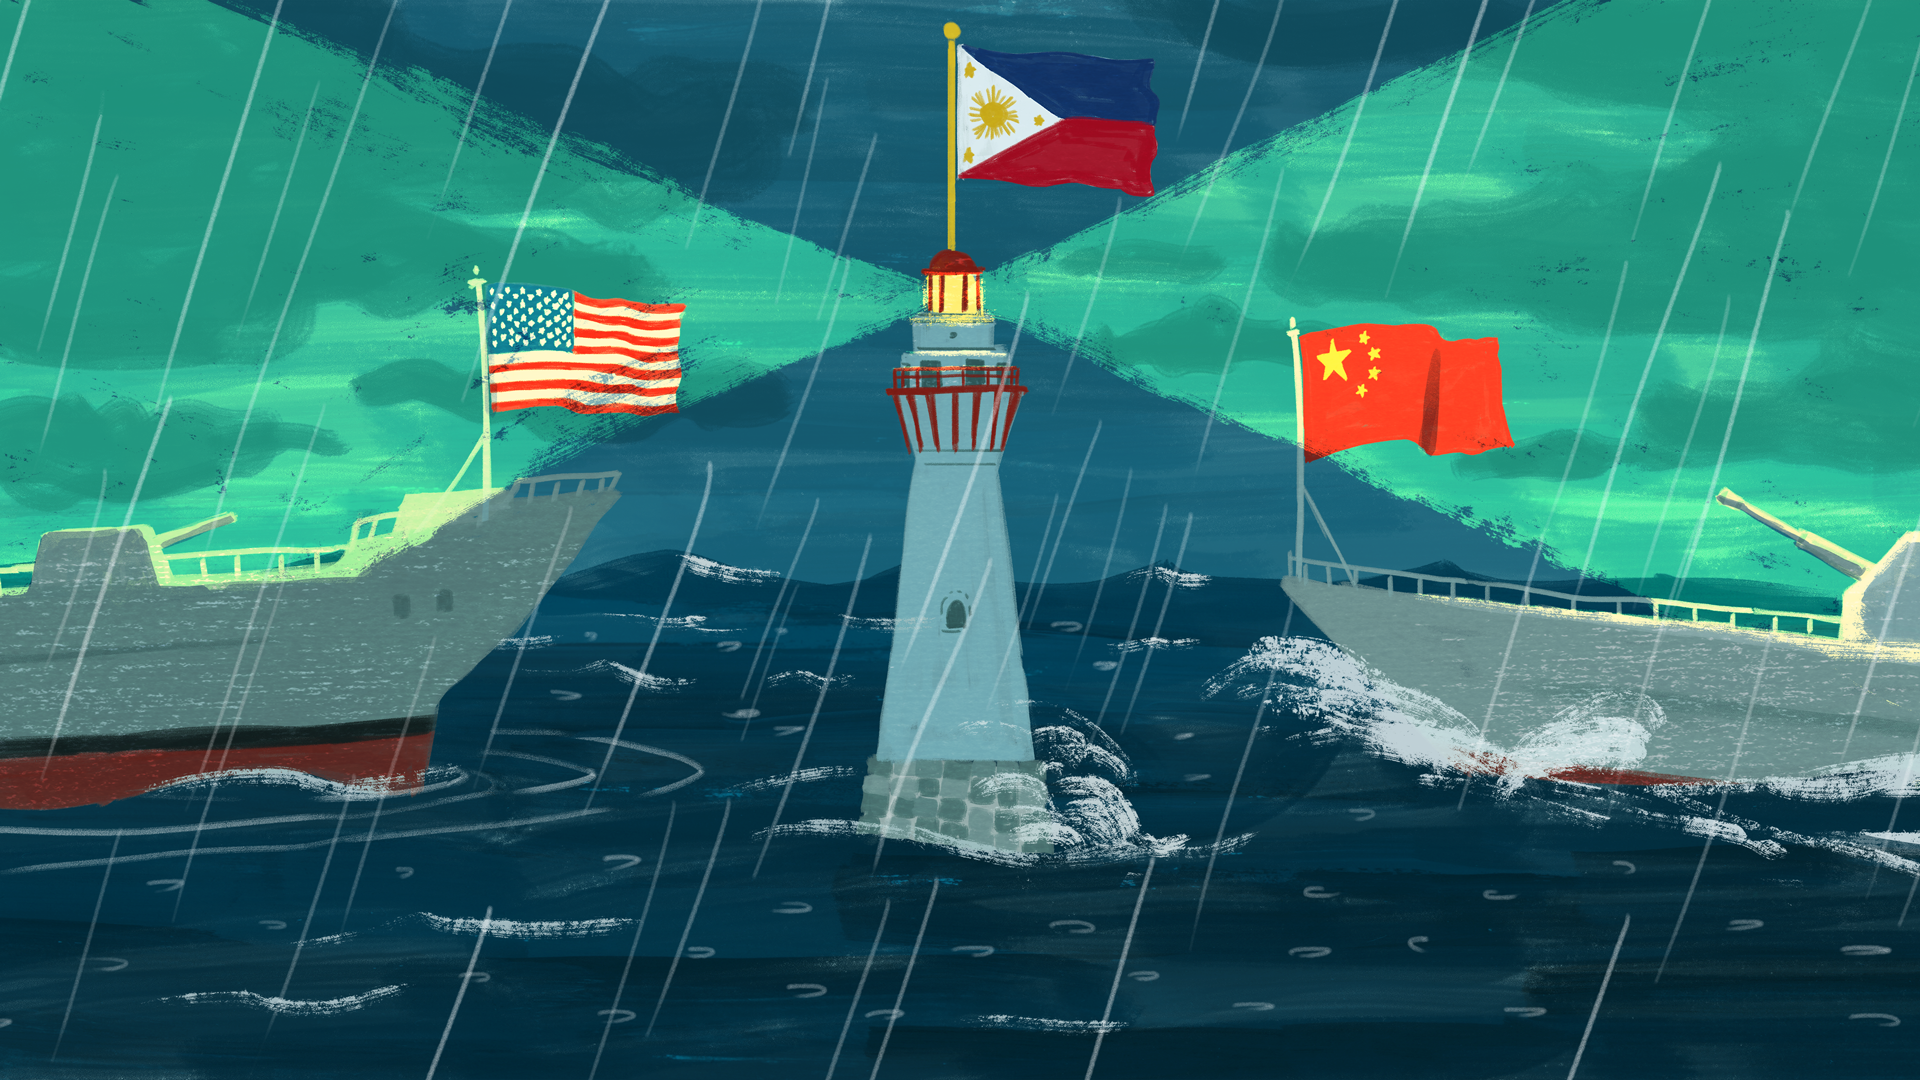 Cứu vãn thỏa thuận vfa, philippines thay đổi trong toan tính địa chính trị ở biển Đông